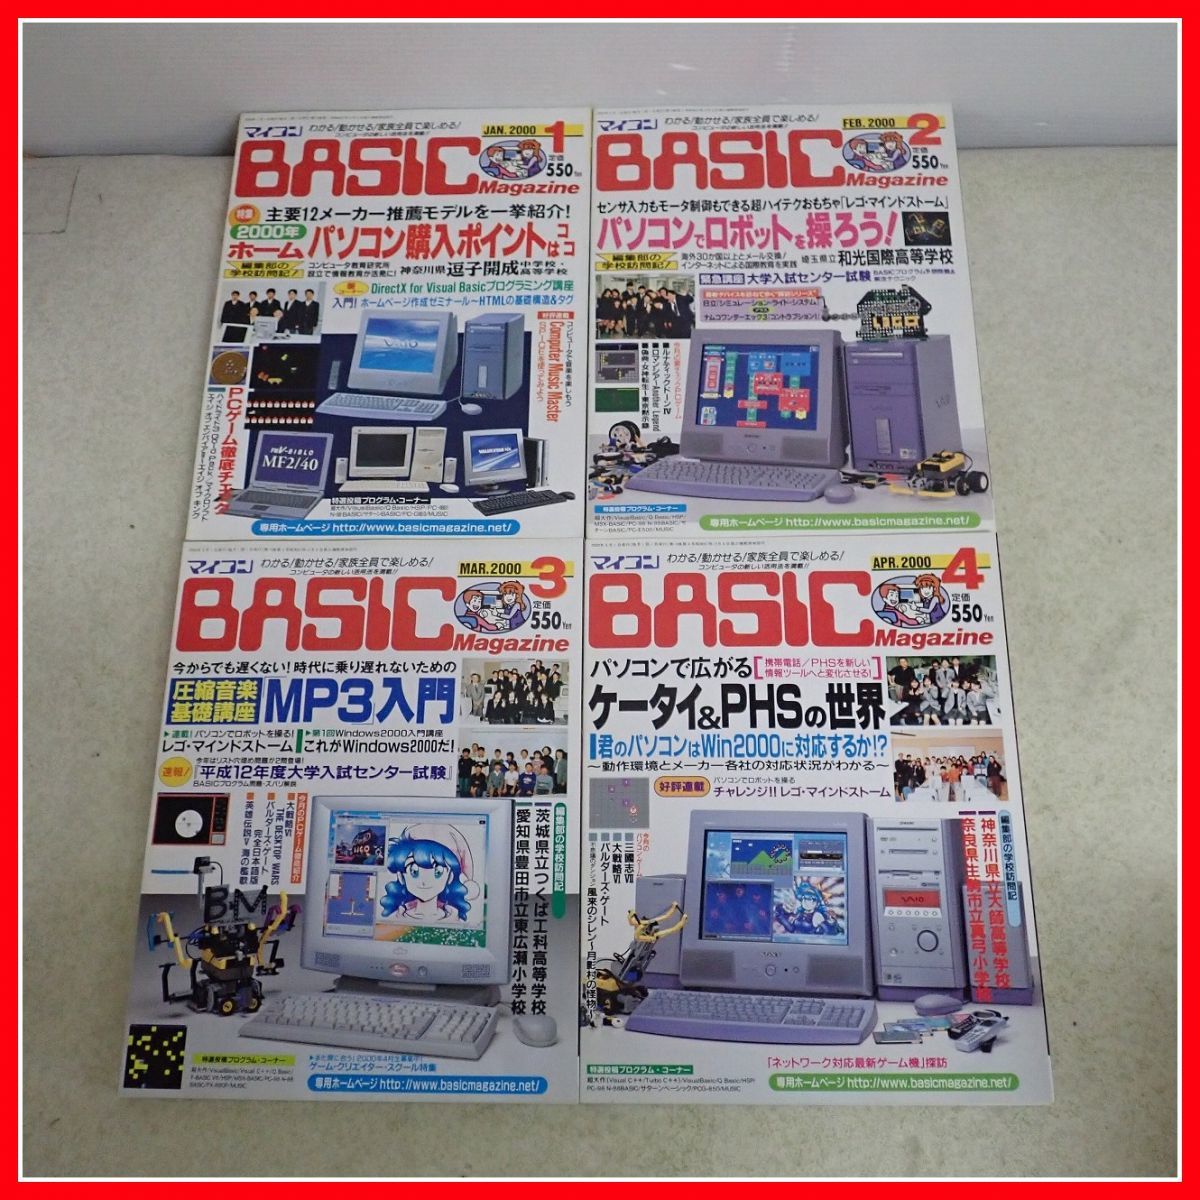 * журнал microcomputer BASIC журнал 2000*01 год продажа минут совместно много комплект радиоволны газета фирма компьютер / программирование относящийся [40